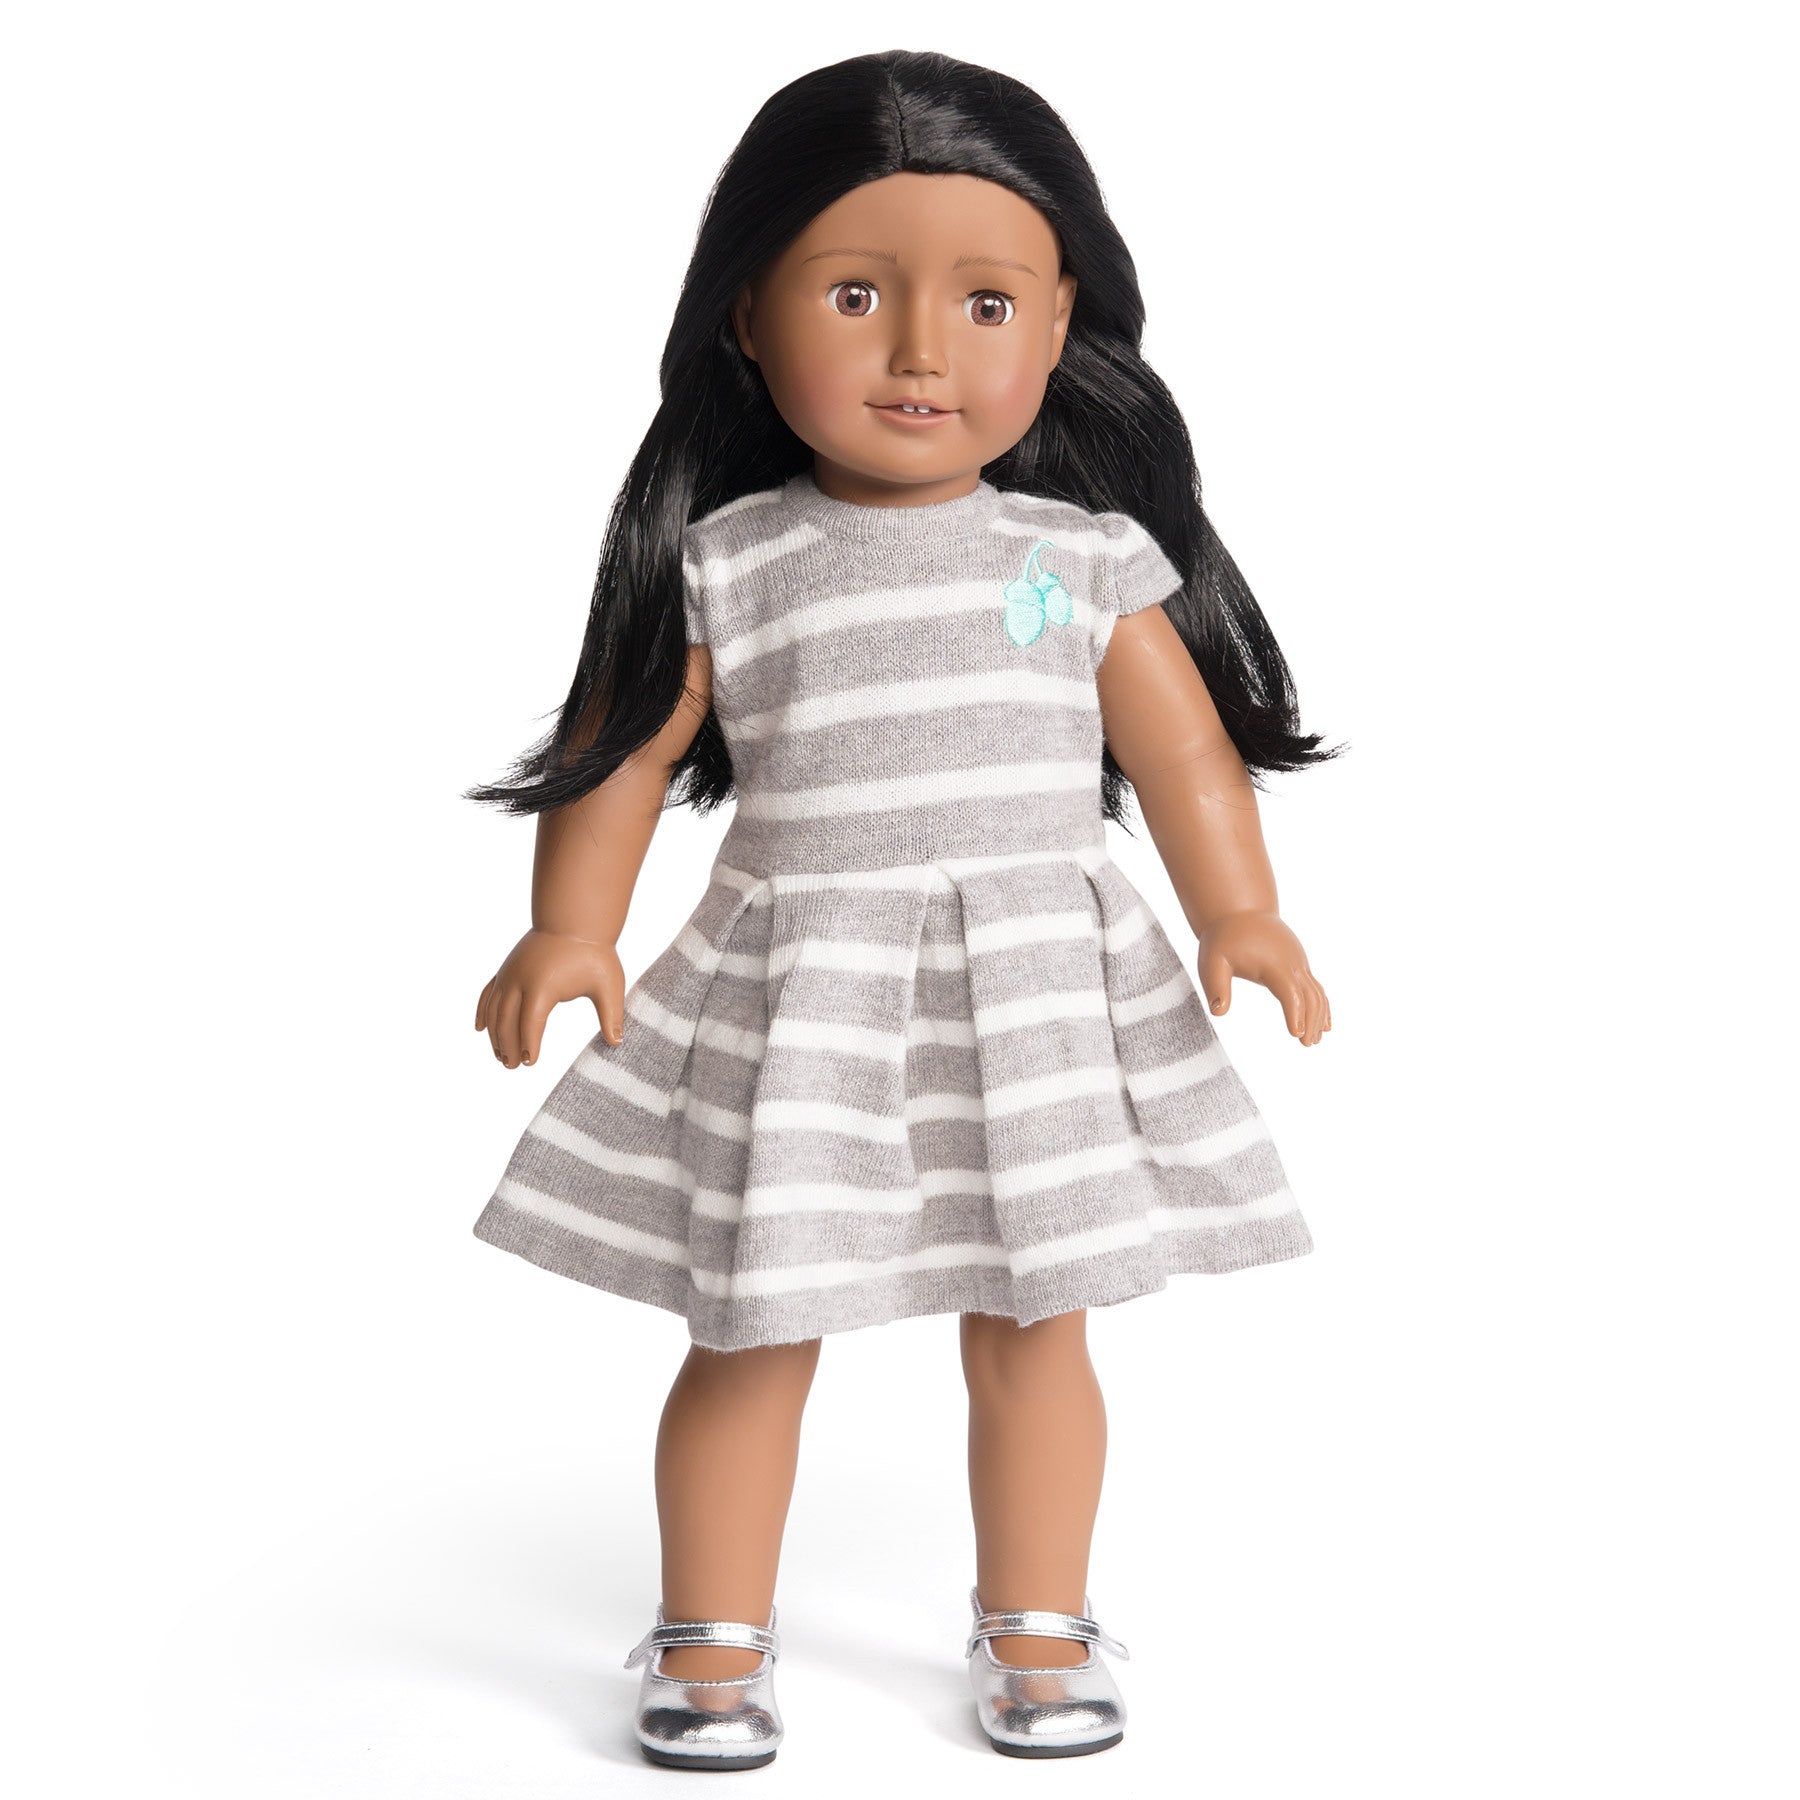 Florrie Doll 10 Dark Skin Black Hair Brown Eyes Doll